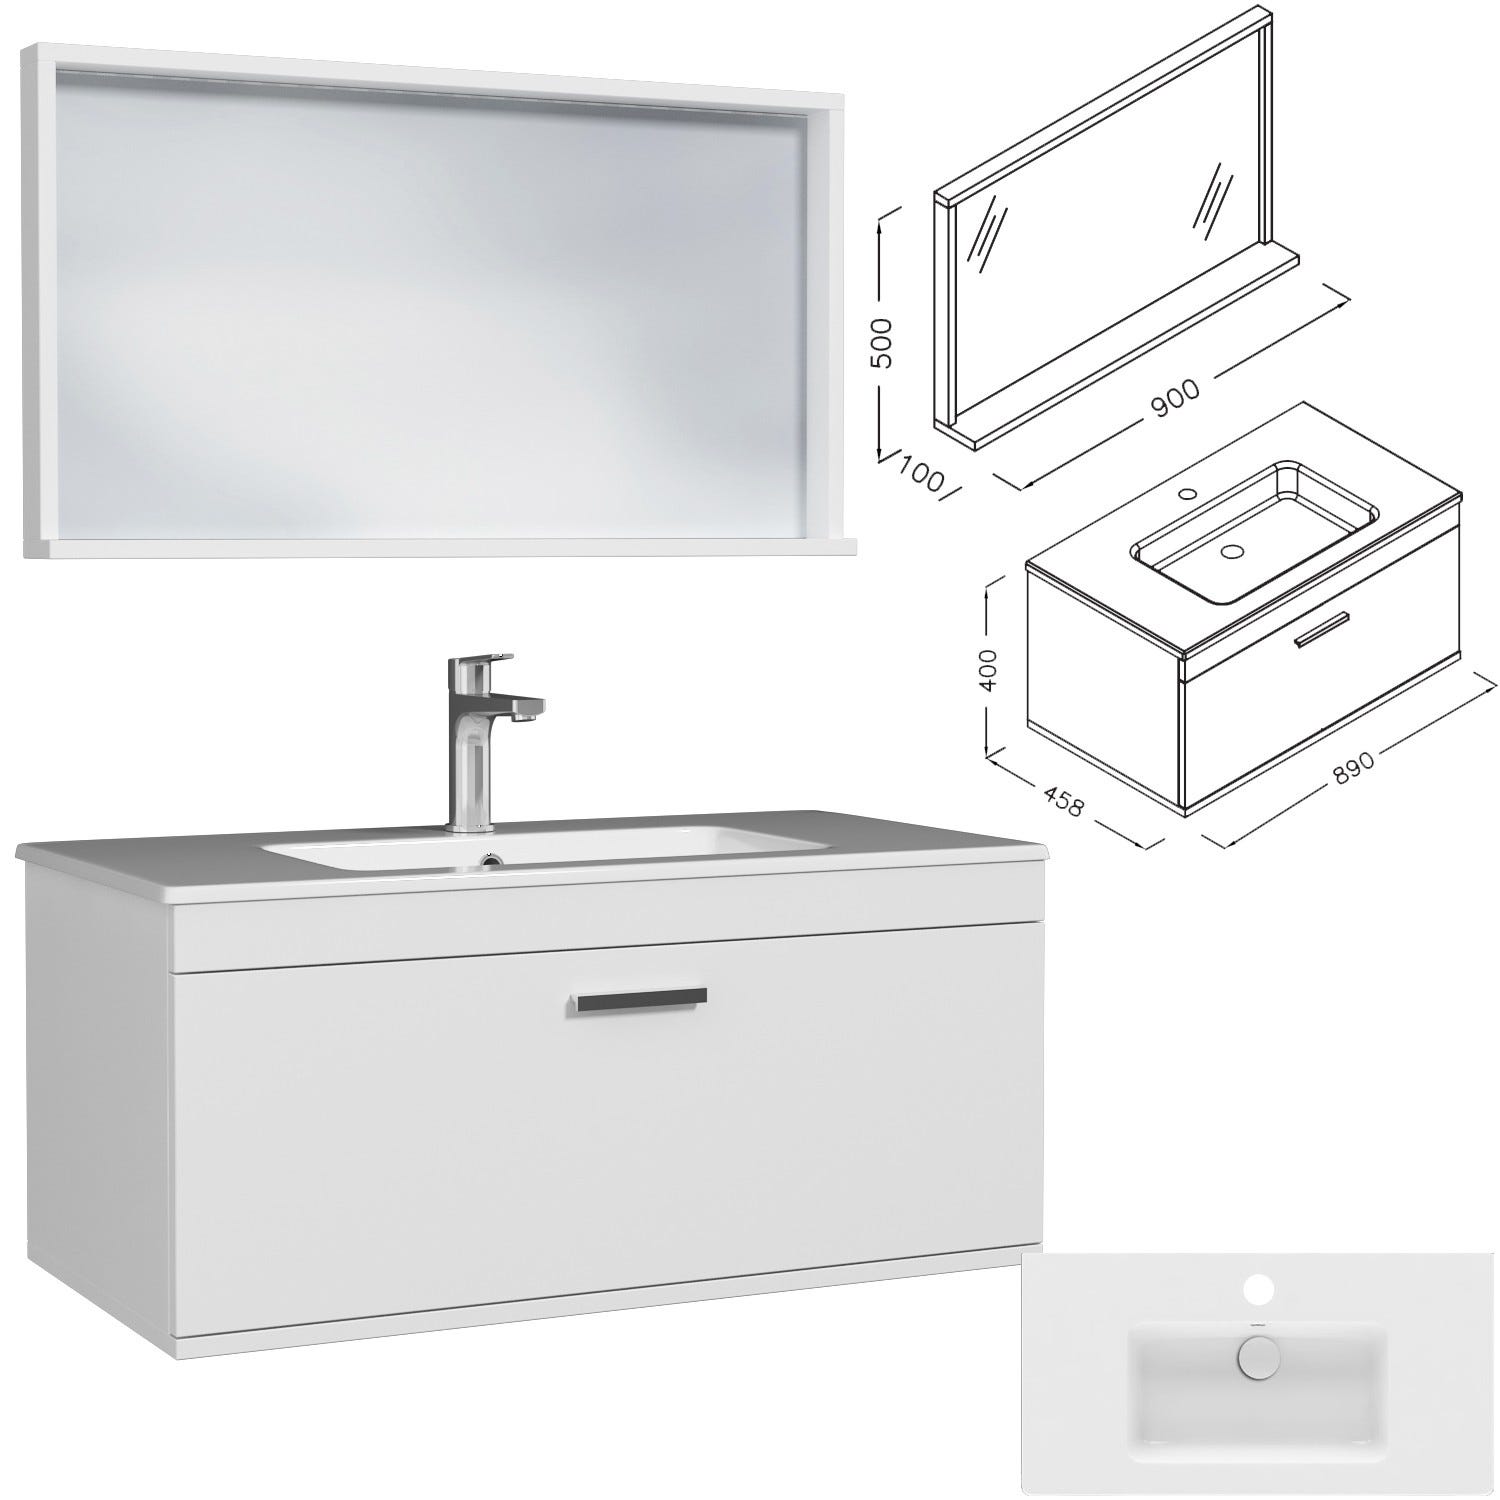 RUBITE Meuble salle de bain simple vasque 1 tiroir blanc largeur 90 cm + miroir cadre 2